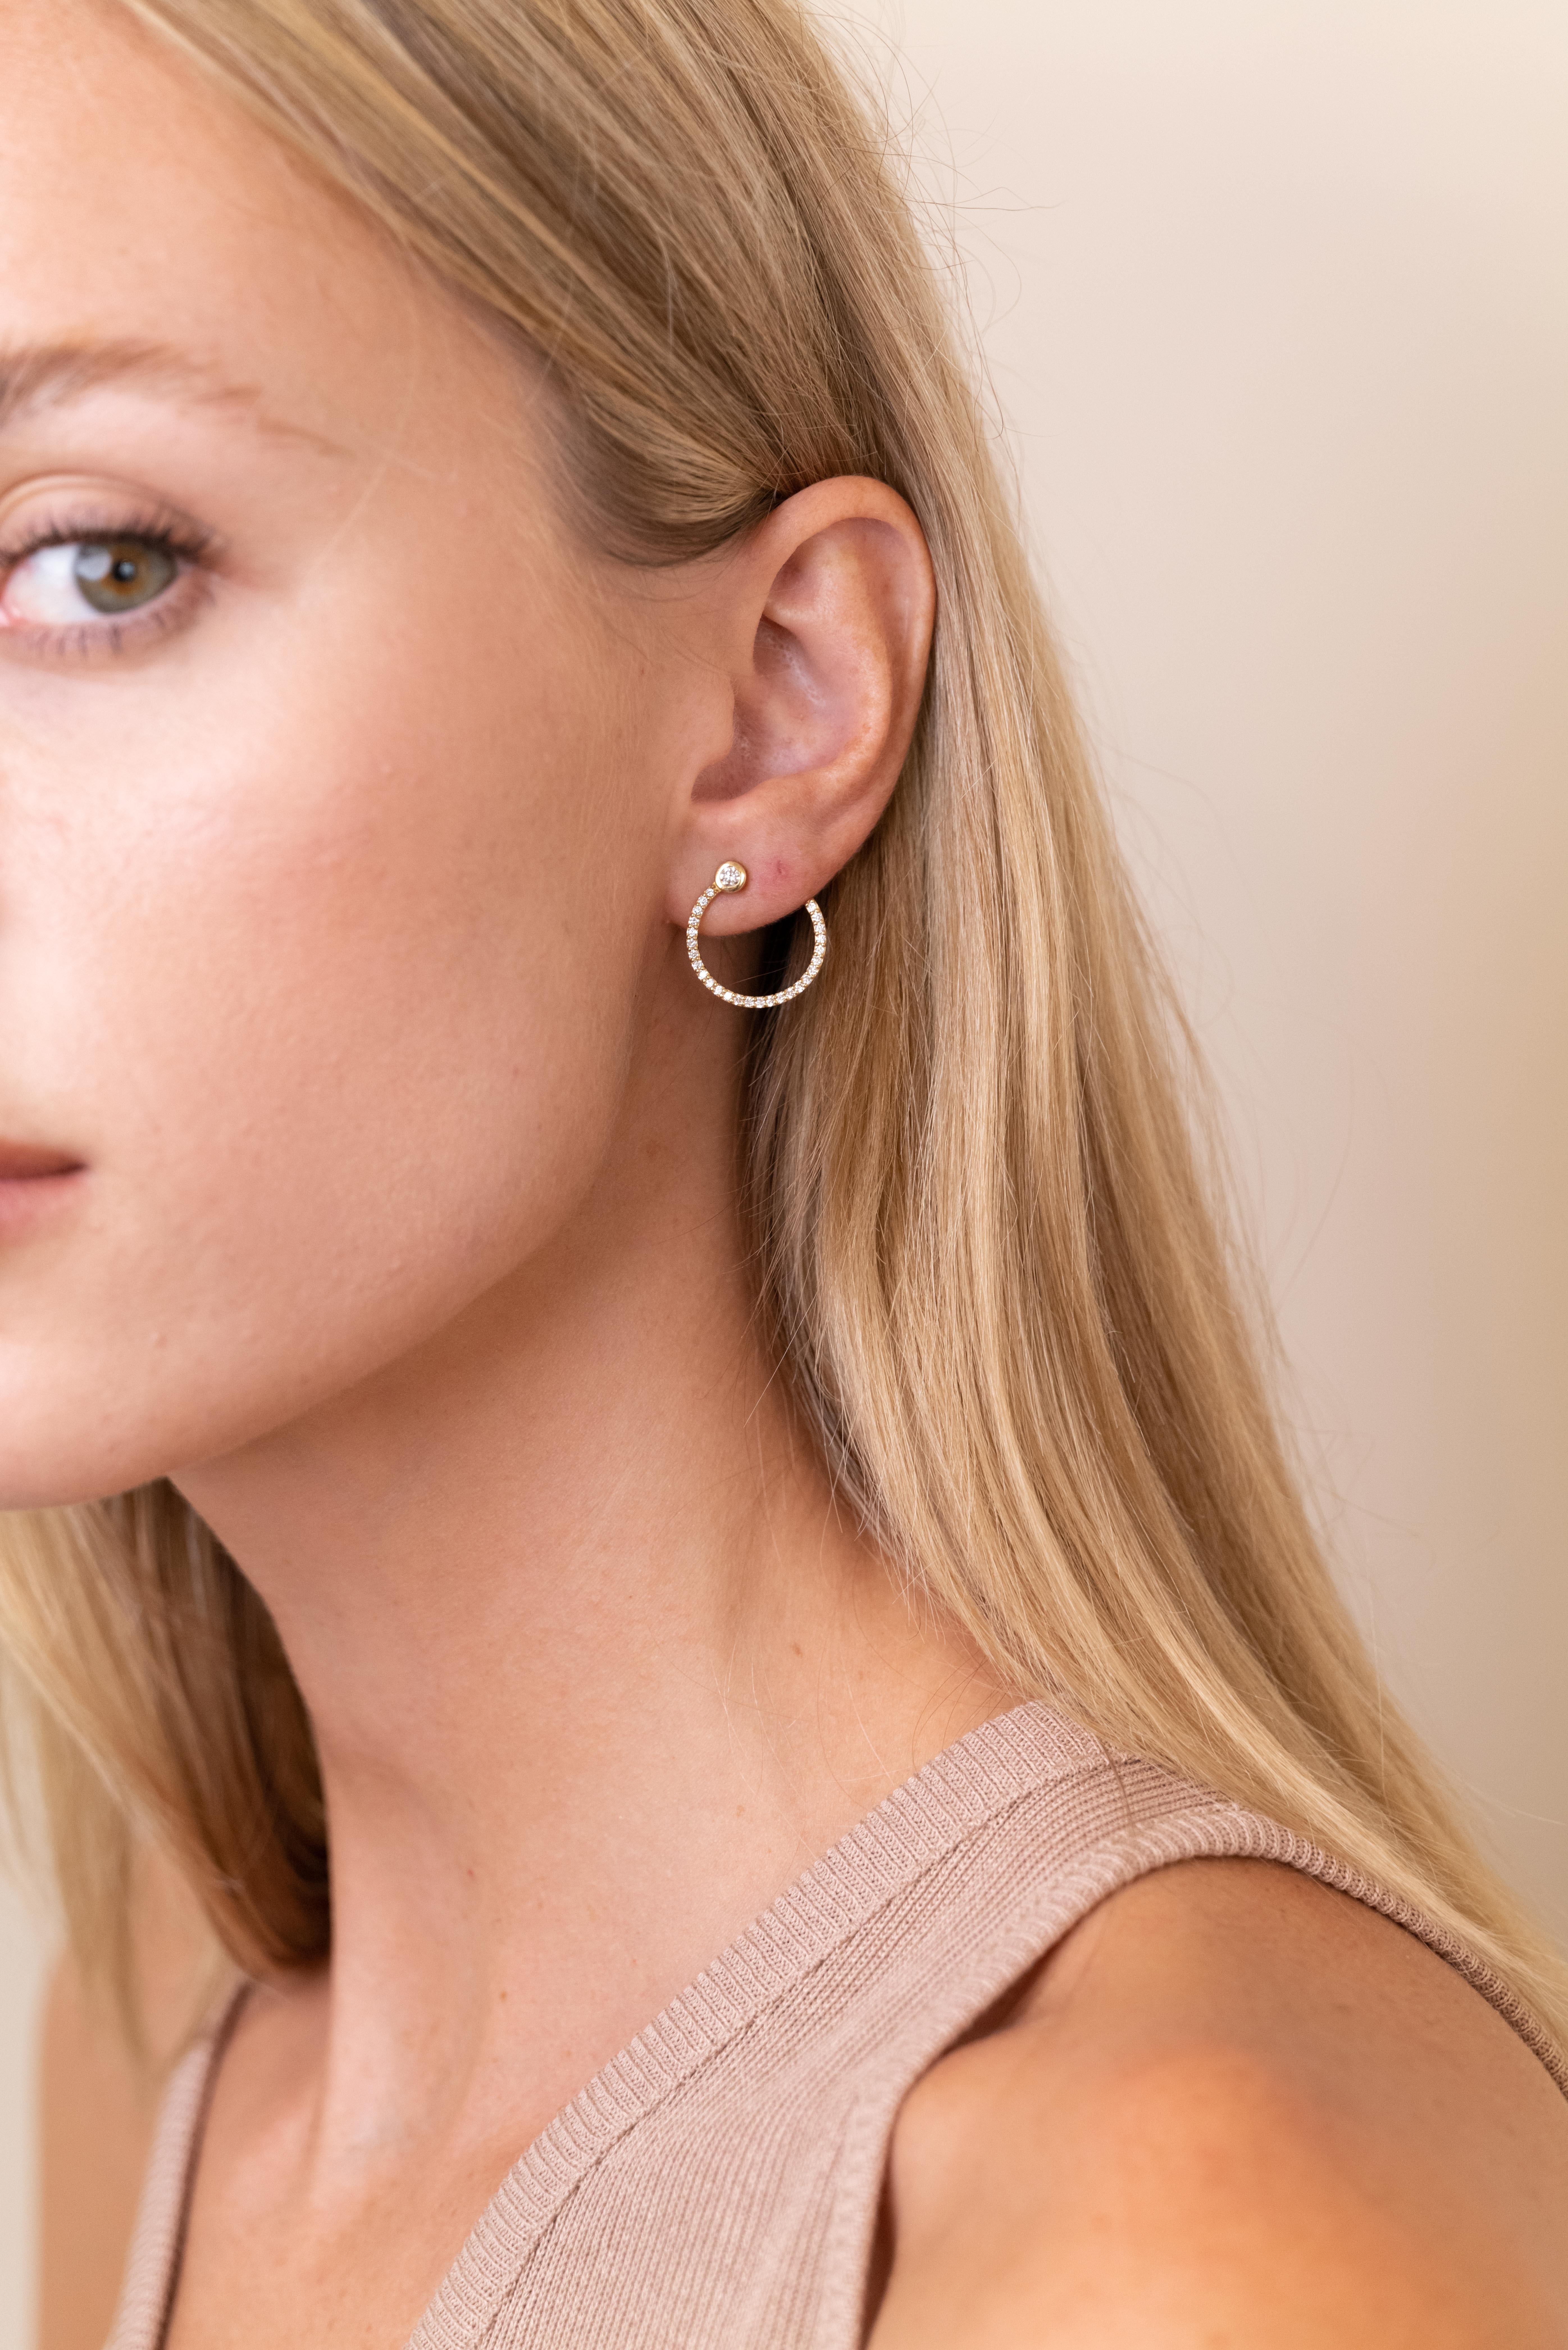 Les boucles d'oreilles 'Eternal Diamond' offrent une approche moderne de la silhouette classique de la boucle en diamant.

La paire est fabriquée en or jaune 18 carats et est illuminée par un diamant serti sur le dessus ainsi que par des diamants